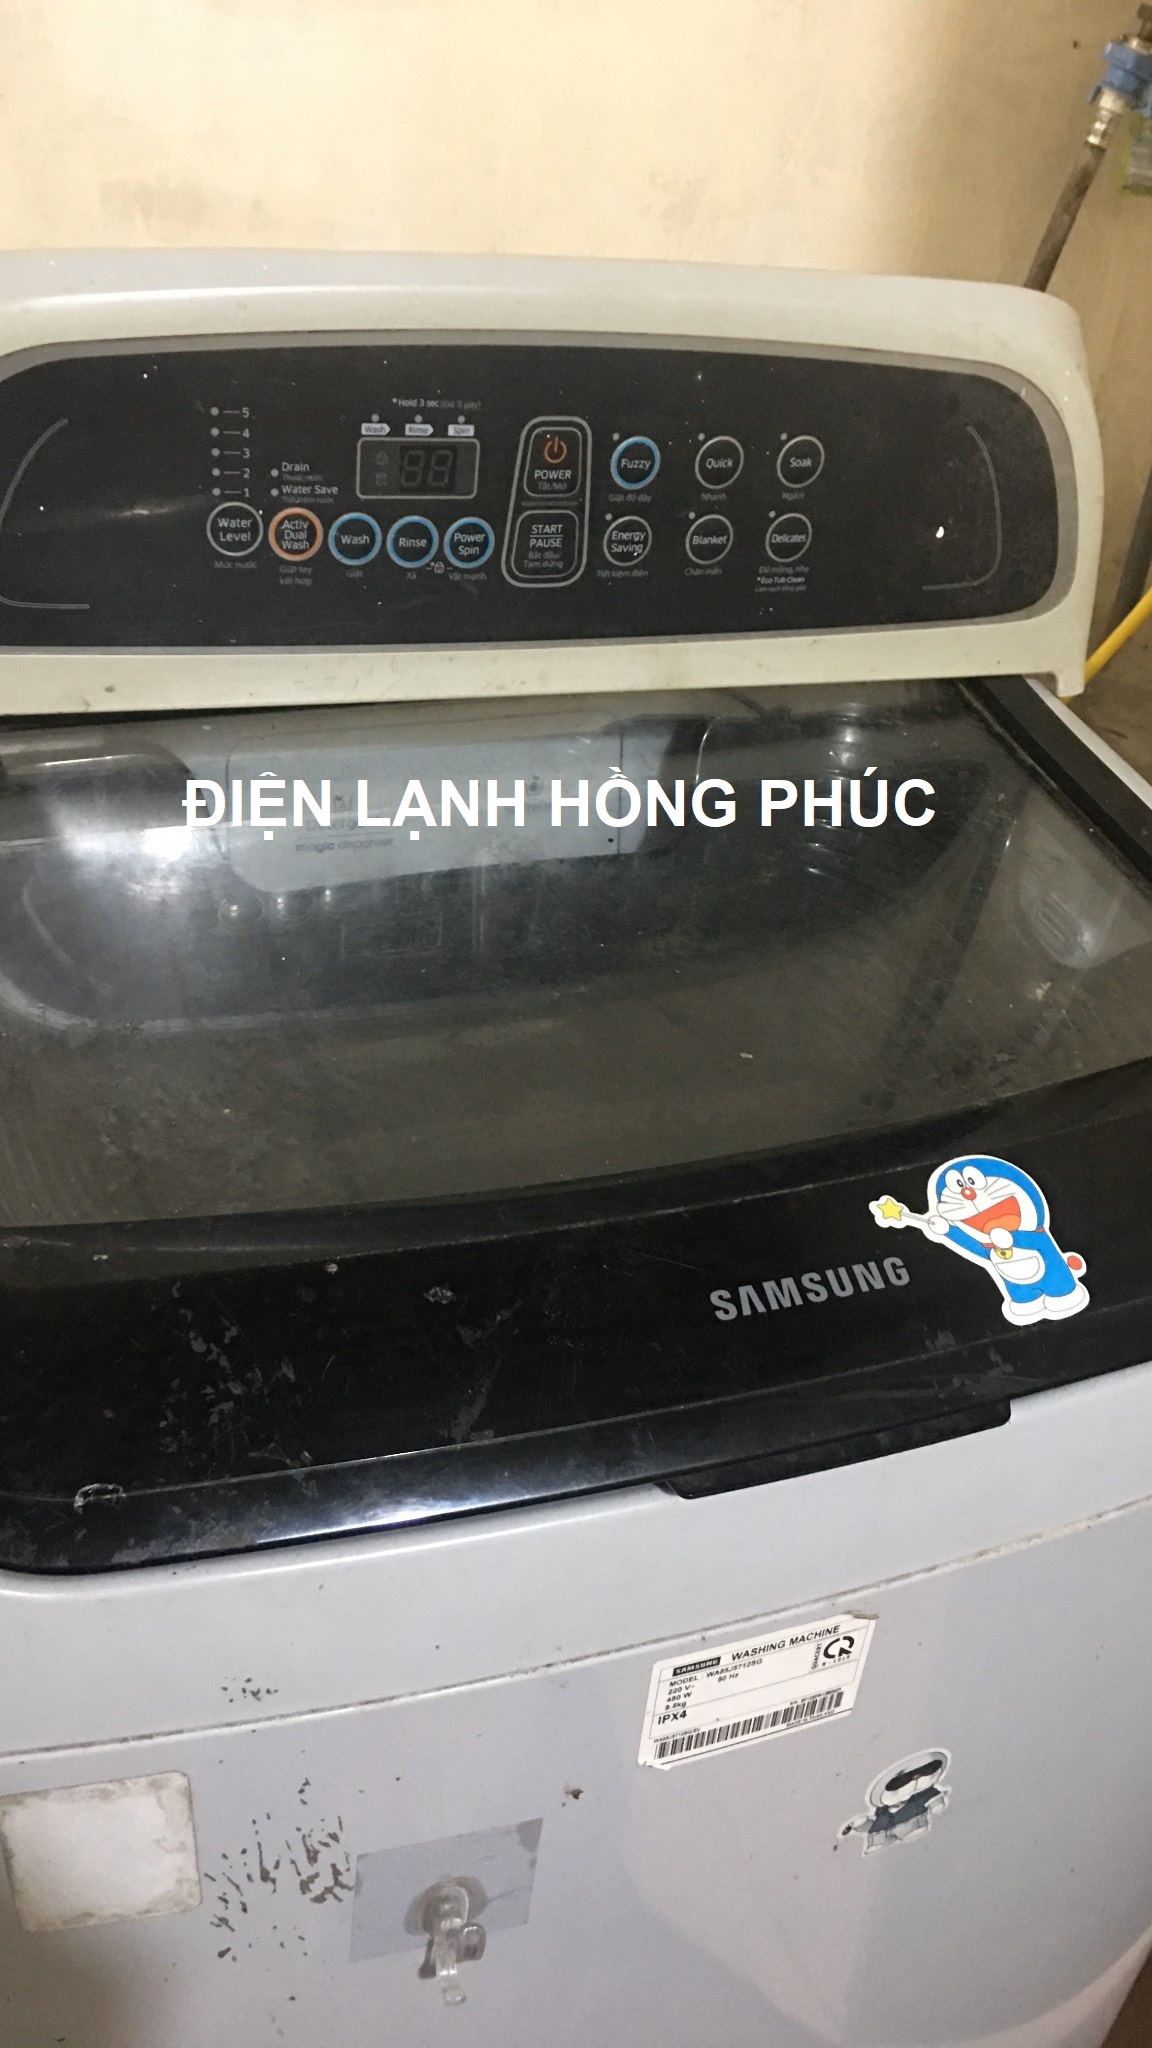 sửa máy giặt samsung không hiển thị màn hình